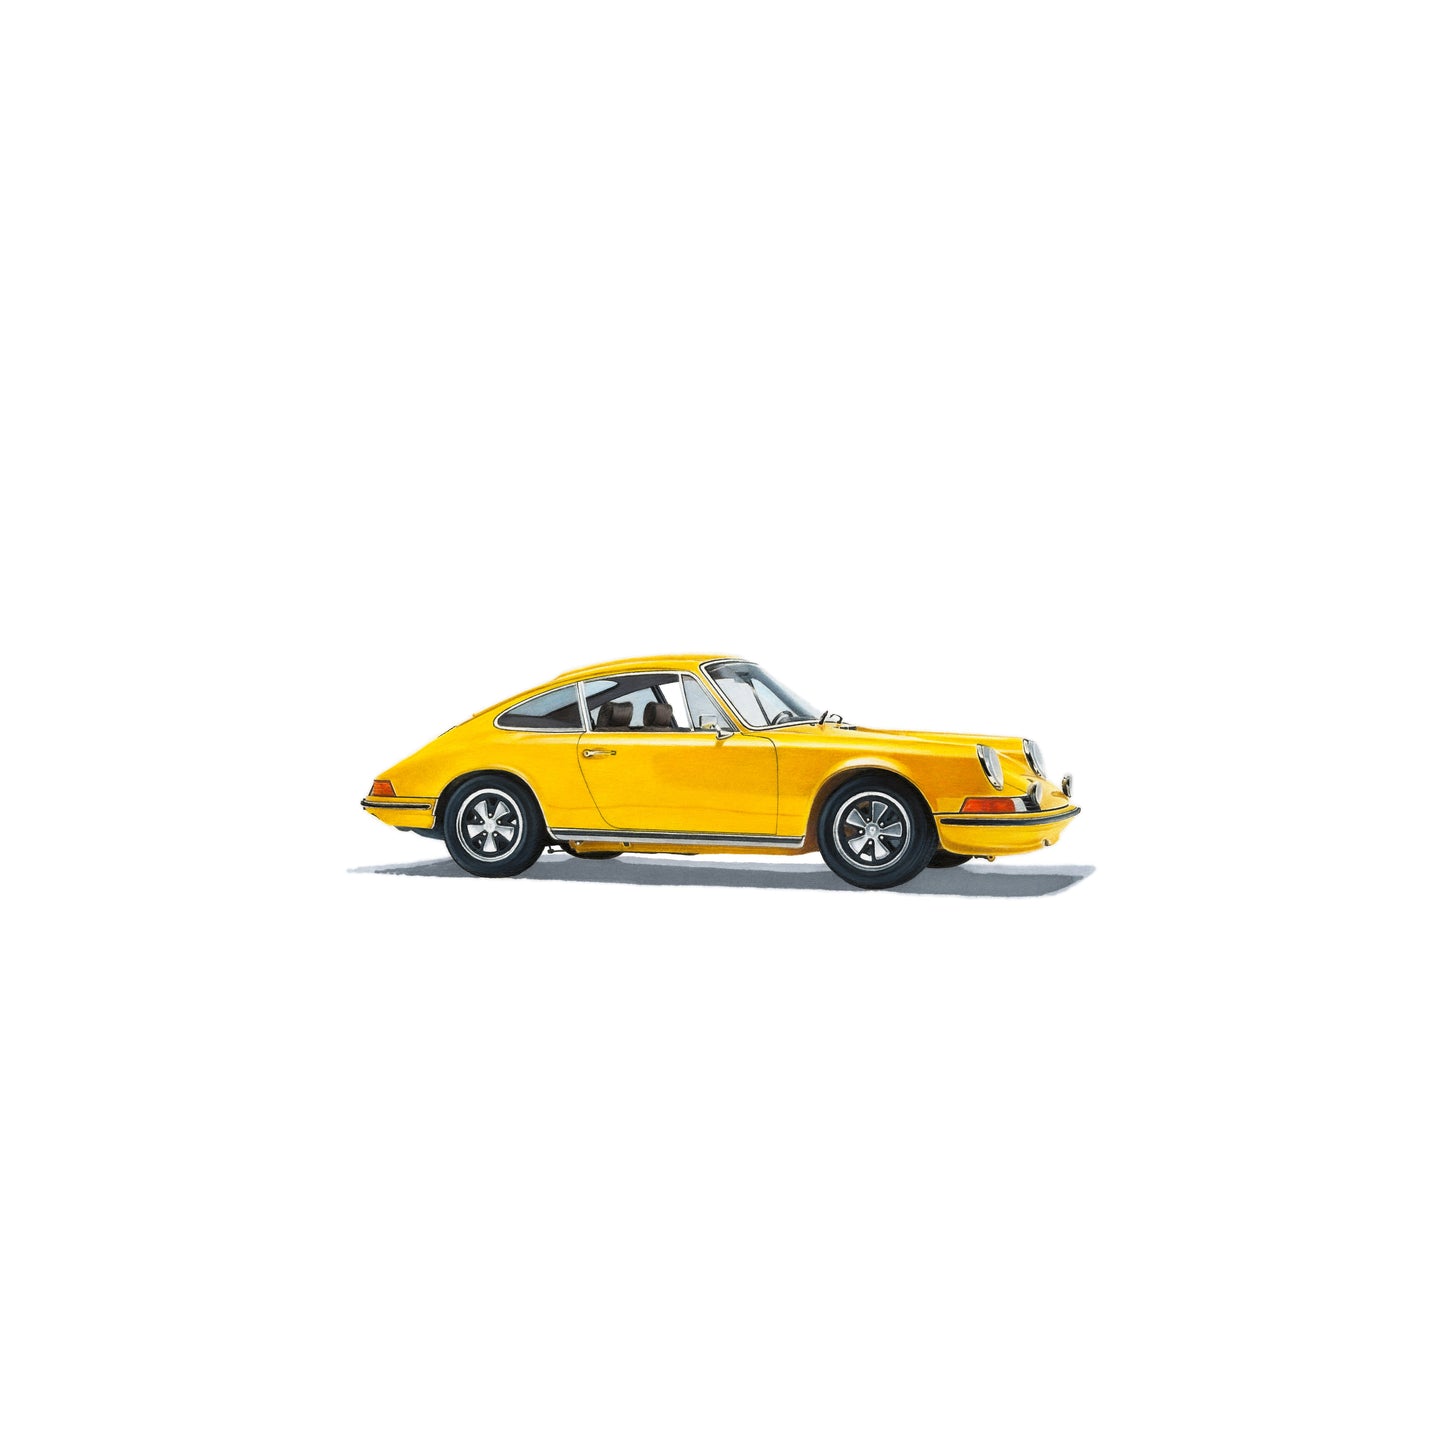 Porsche 911S (signal yellow)  - Side